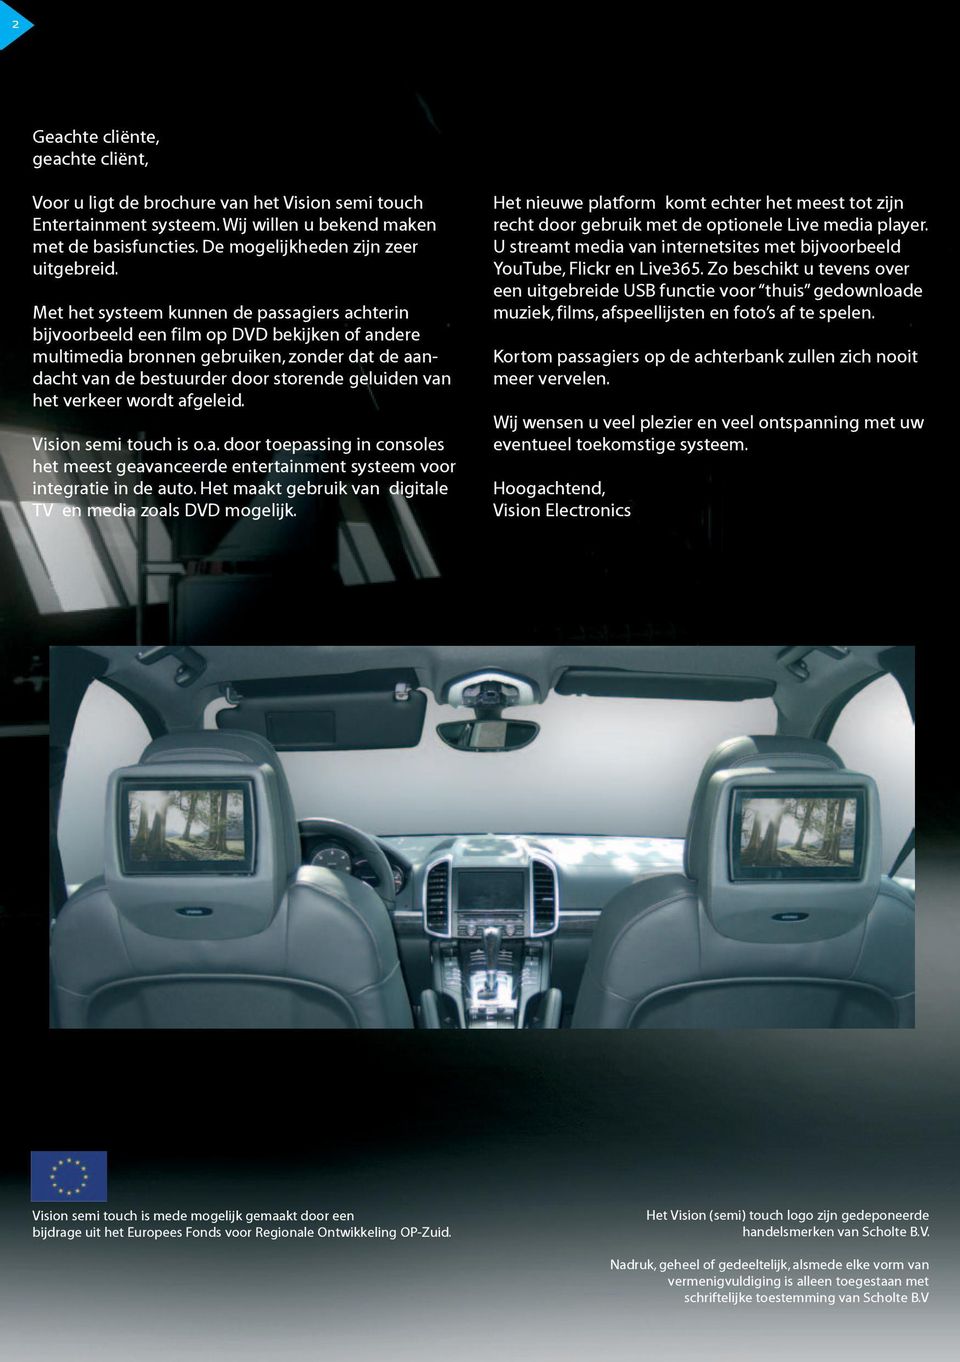 verkeer wordt afgeleid. Vision semi touch is o.a. door toepassing in consoles het meest geavanceerde entertainment systeem voor integratie in de auto.